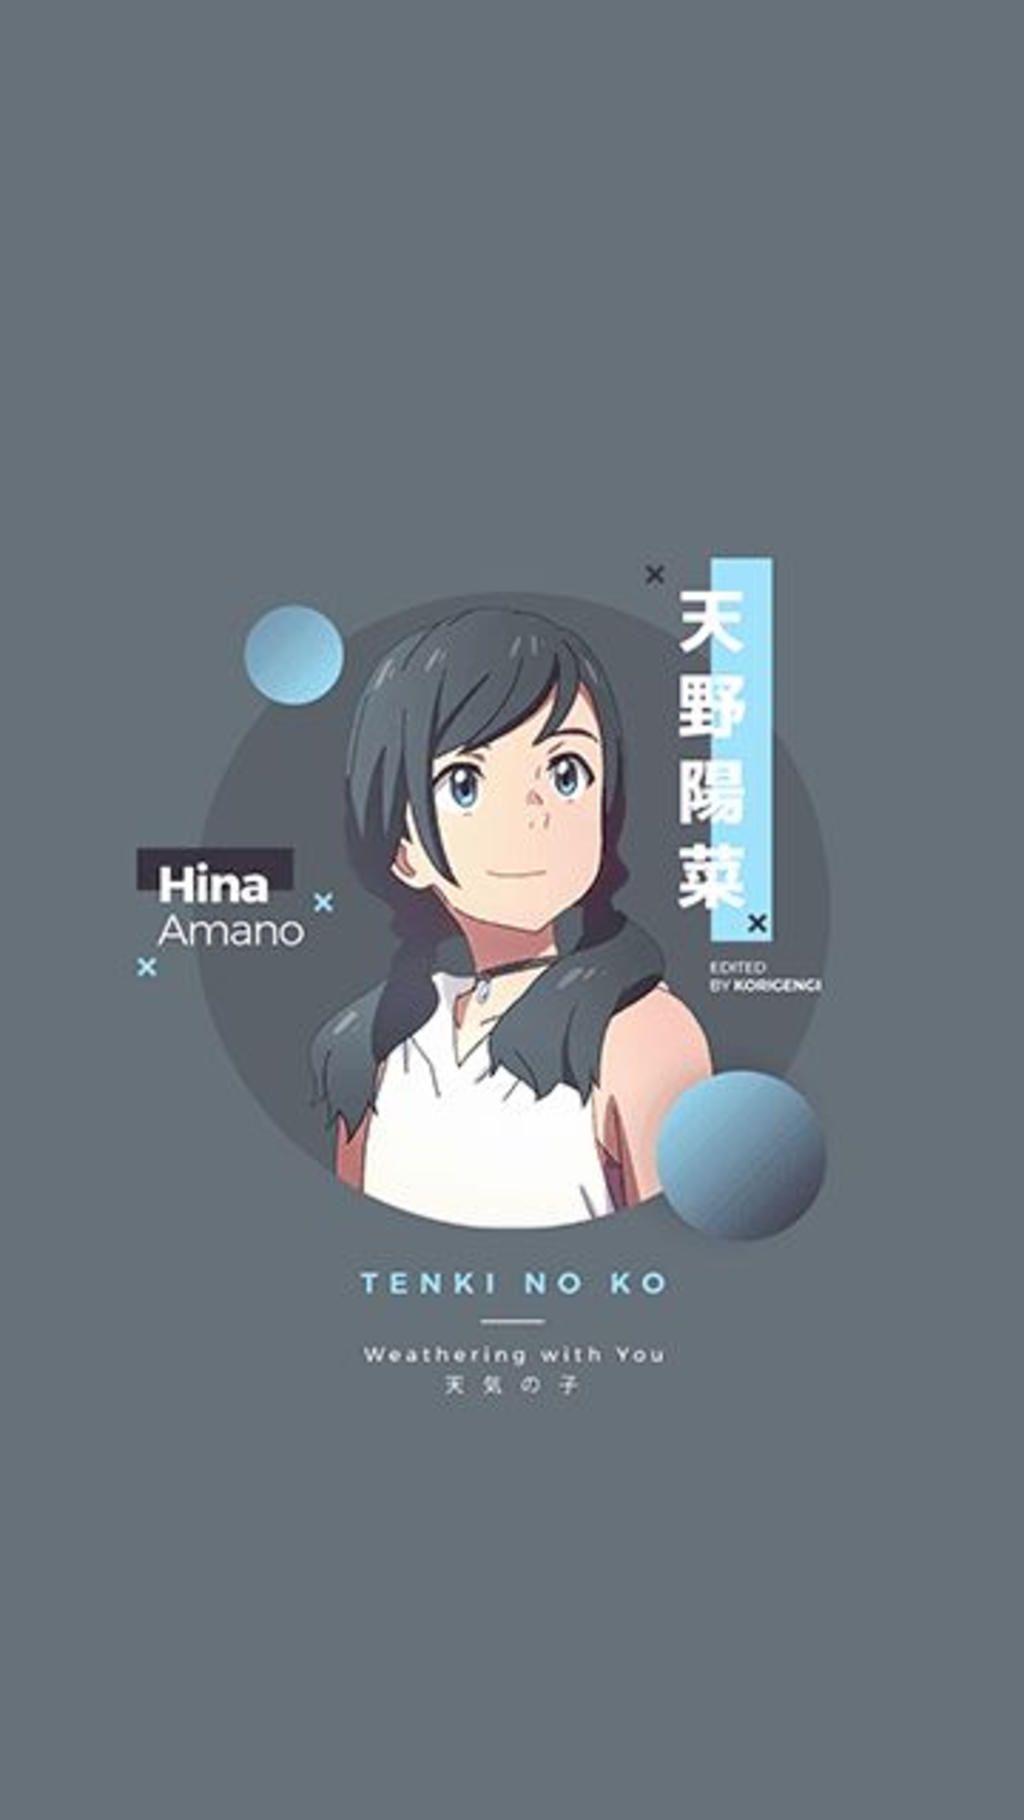 Vẽ giúp mình nhân vật Hina trong bộ anime 